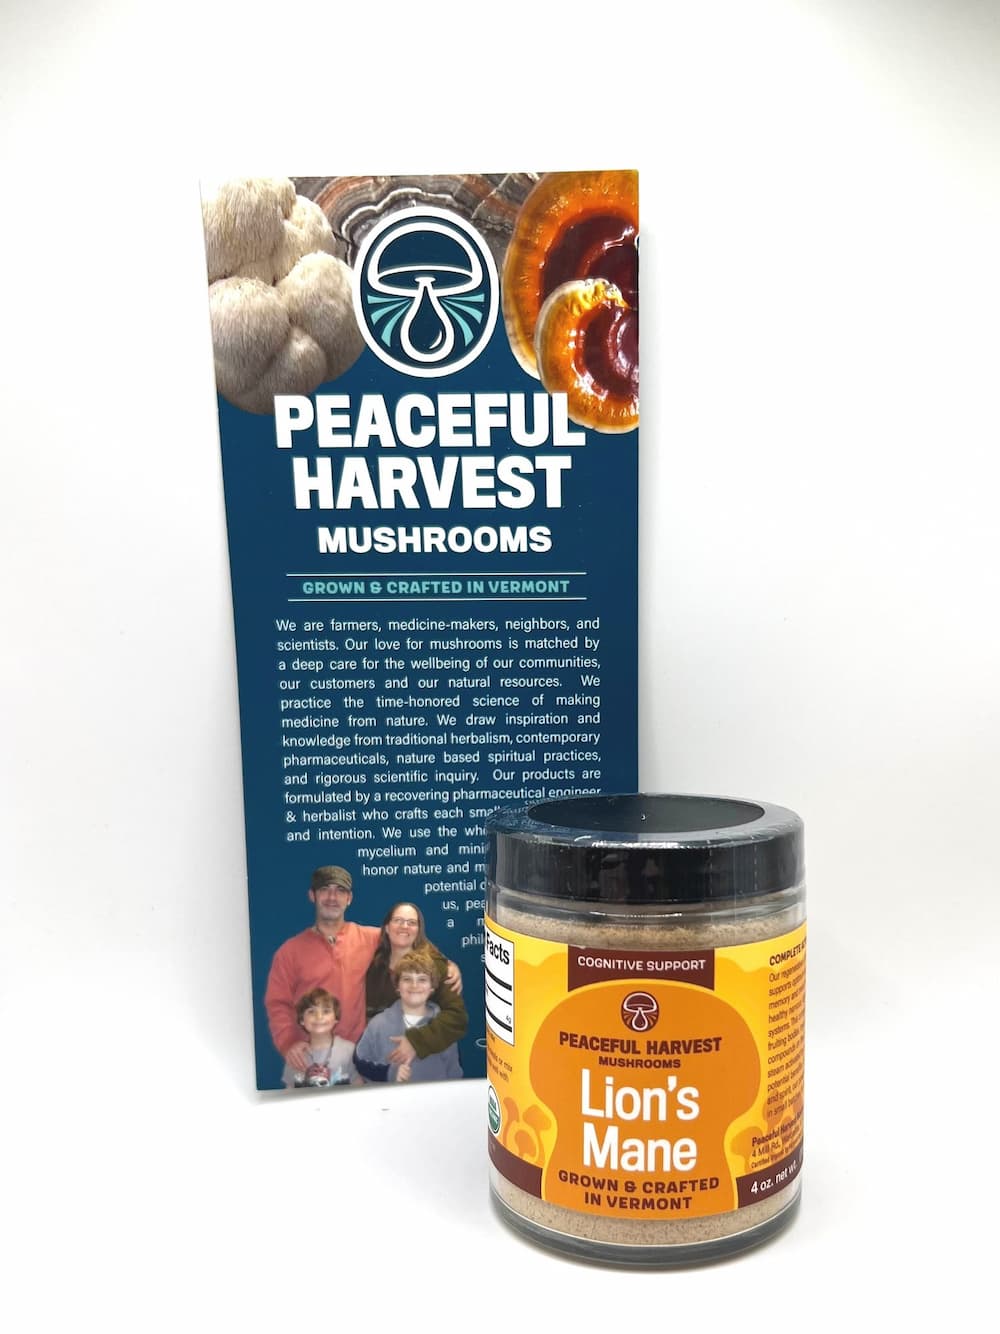 Lion's Mane Powder - Organic